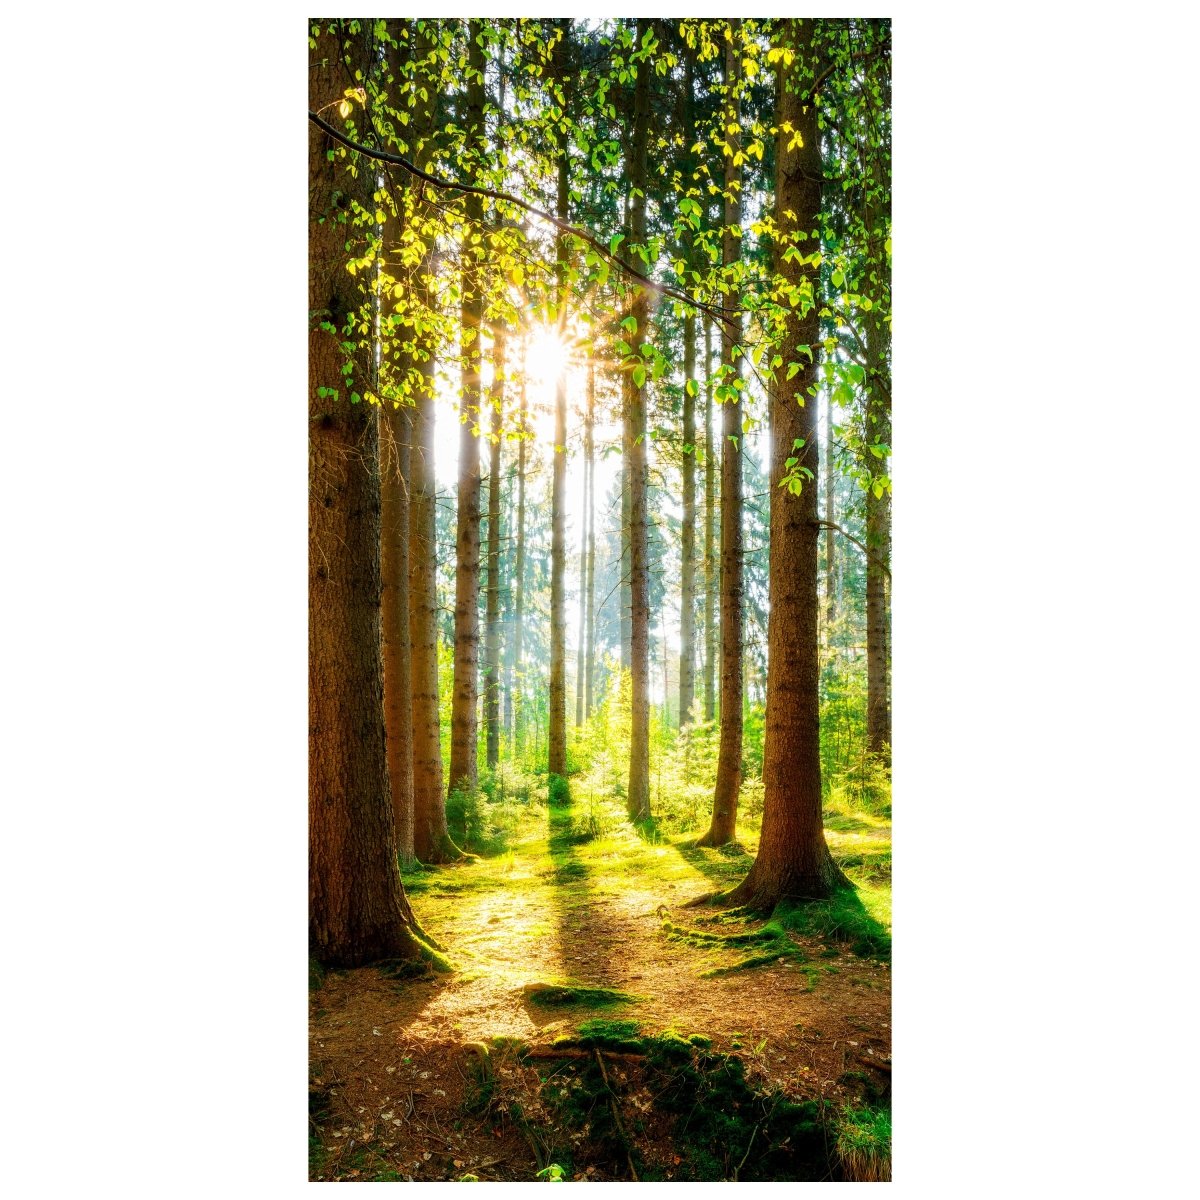 Türtapete Wald, Bäume, Lichtung M1422 - Bild 2